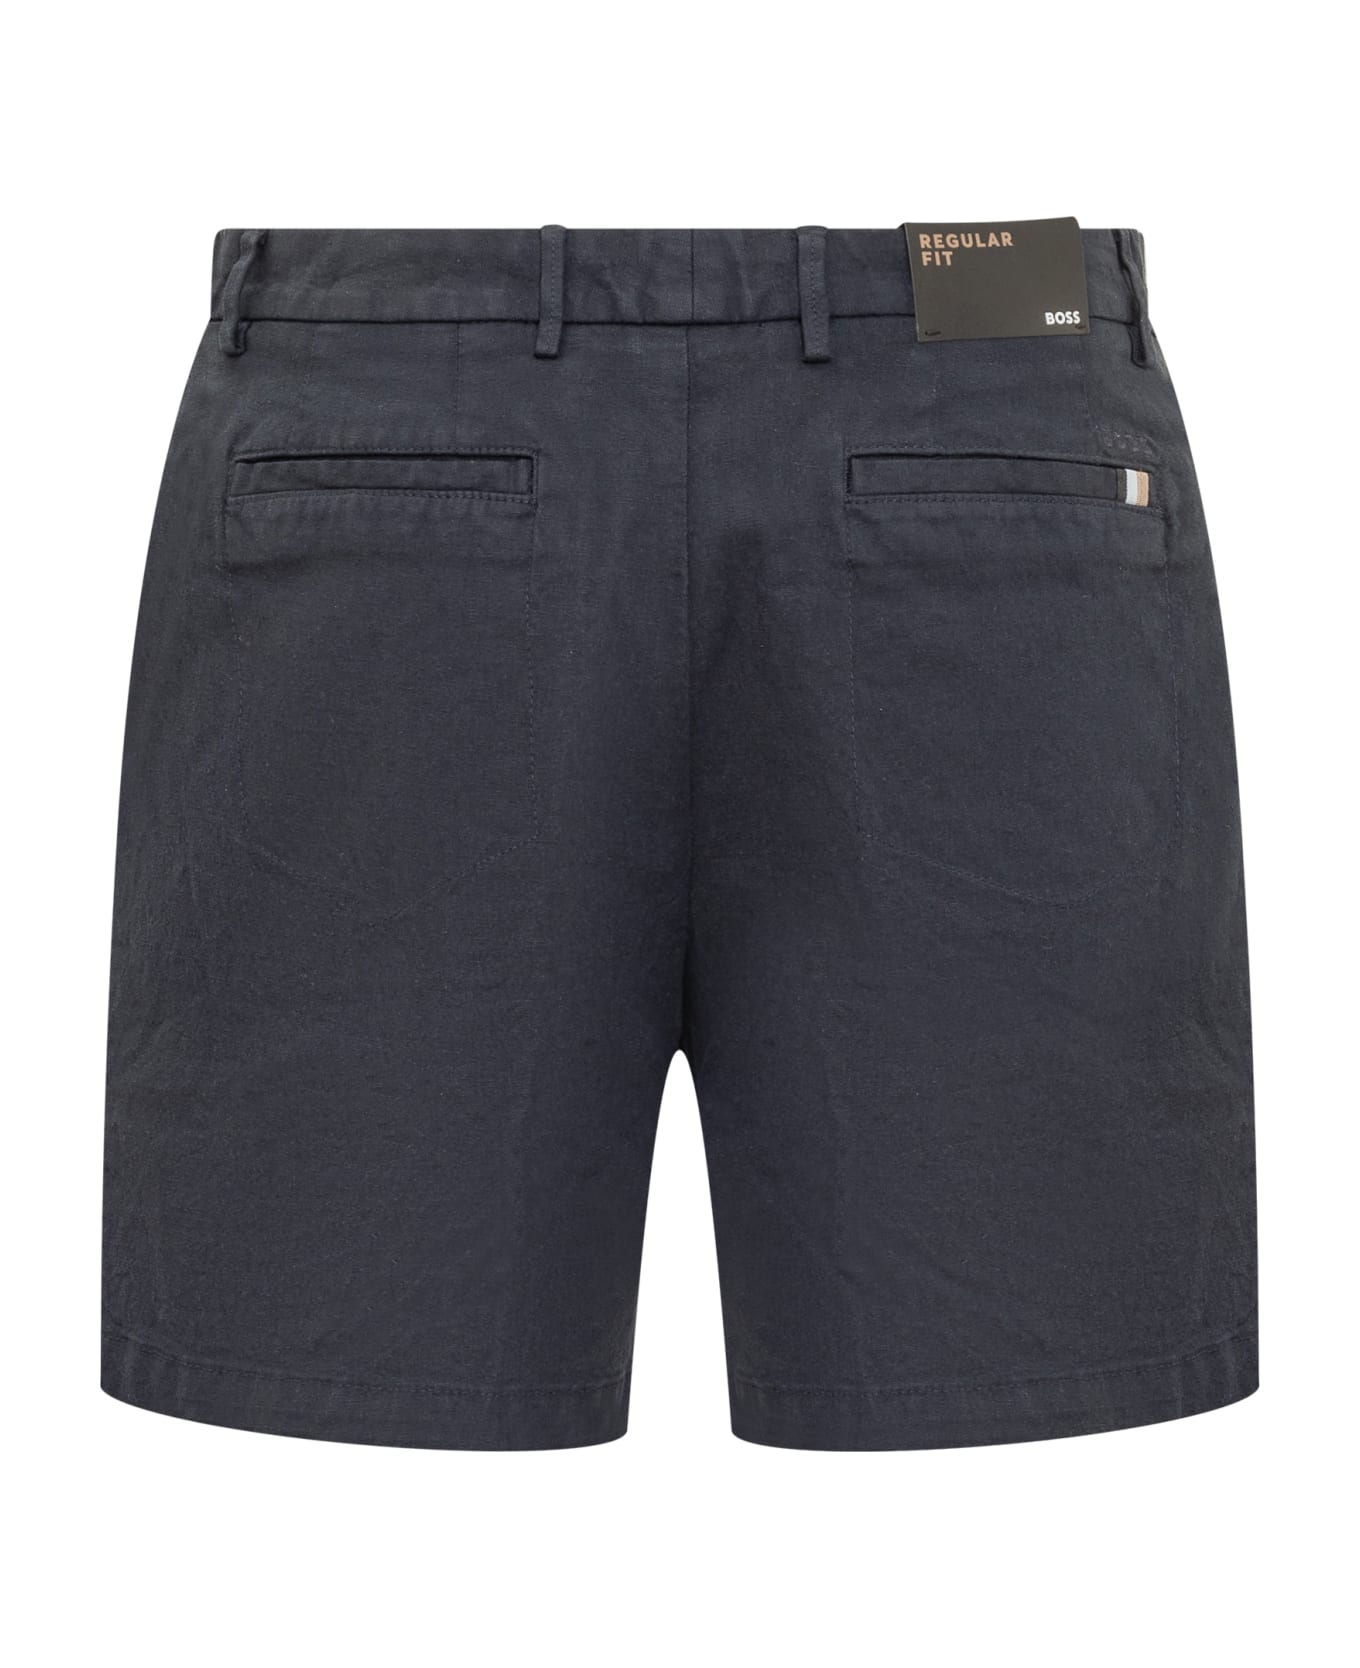 Hugo Boss Shorts - DARK BLUE